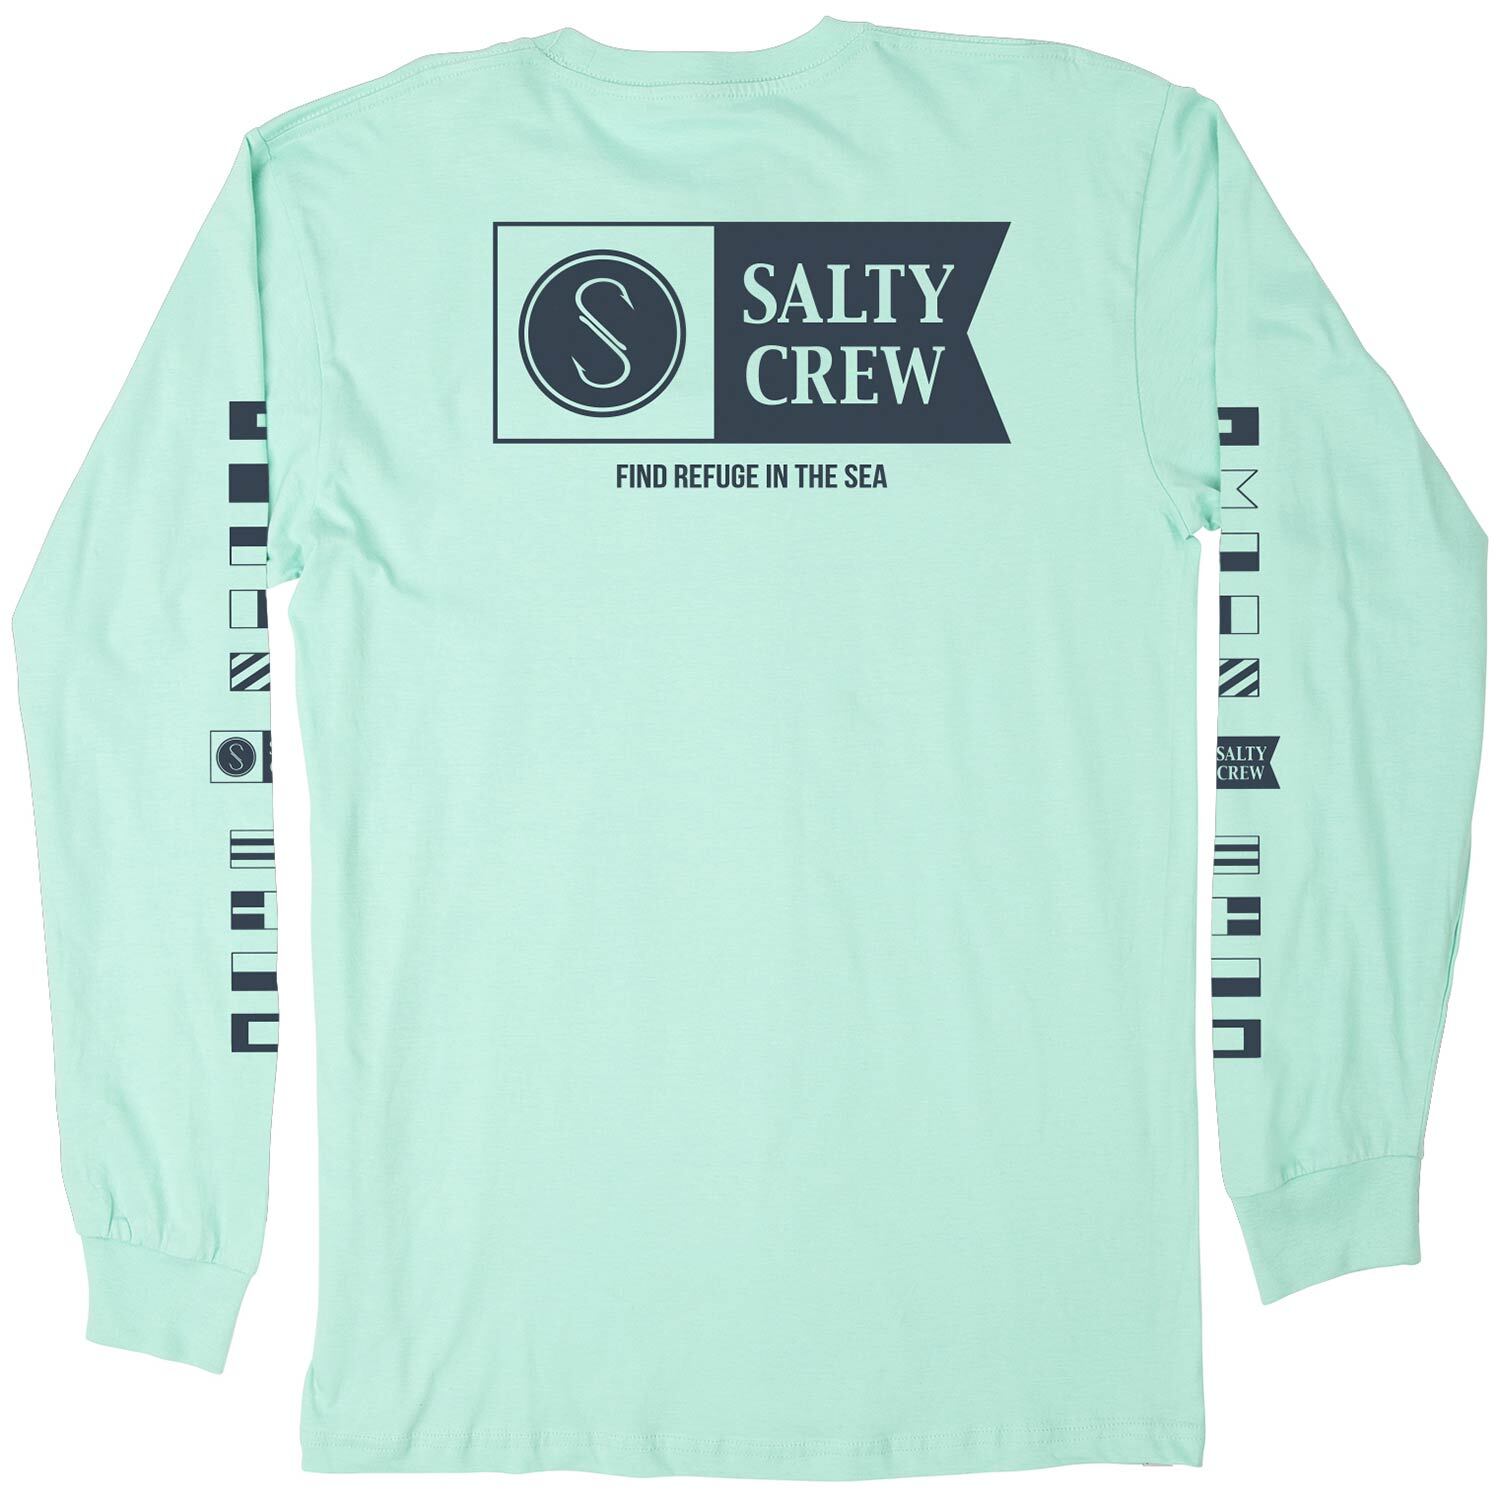 Salty Crew Men's Alpha Long Sleeve Sun Shirt - Sage - M Each